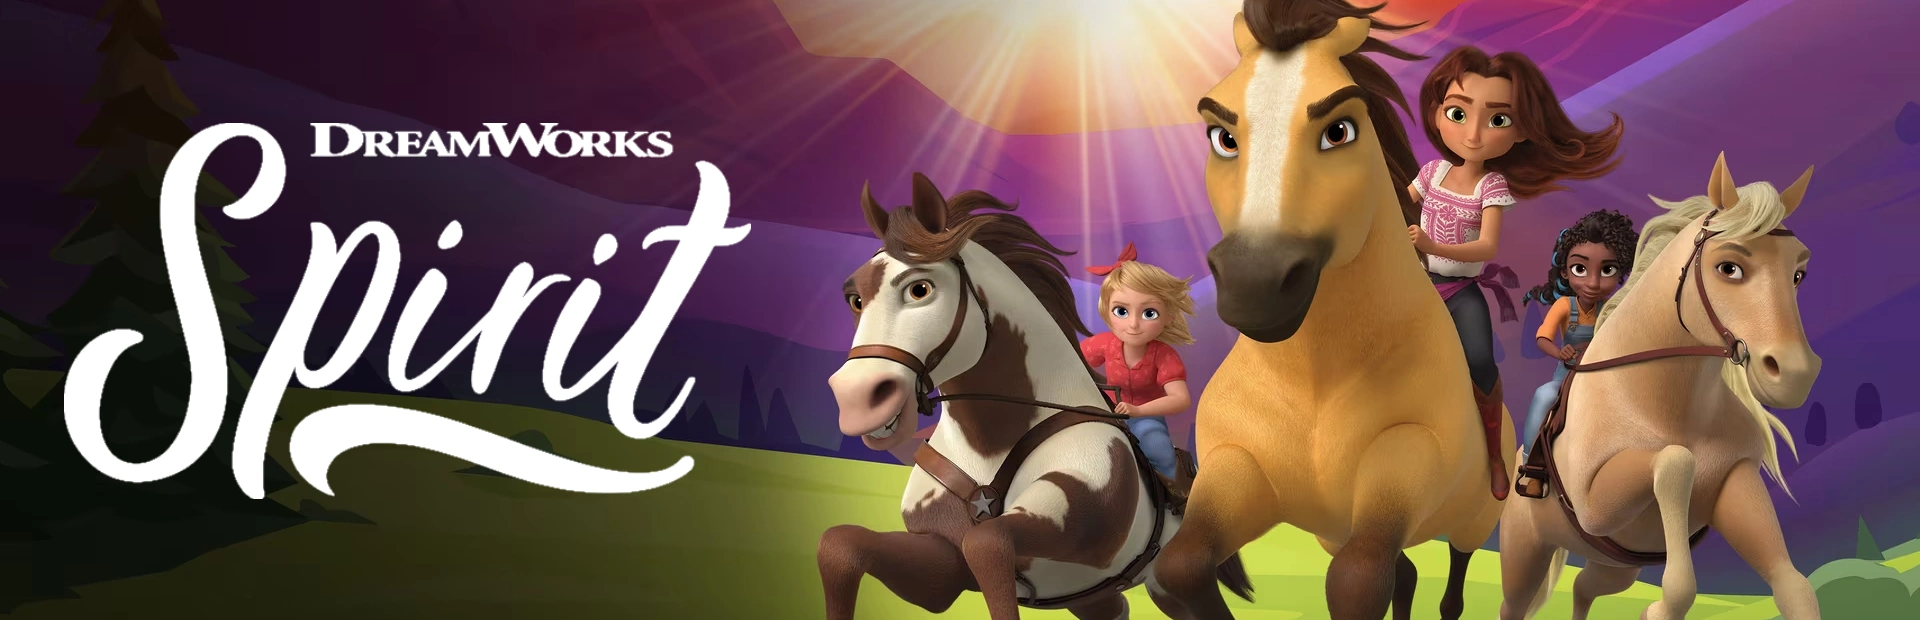 دانلود بازی DreamWorks Spirit Lucky's برای PC | گیمباتو